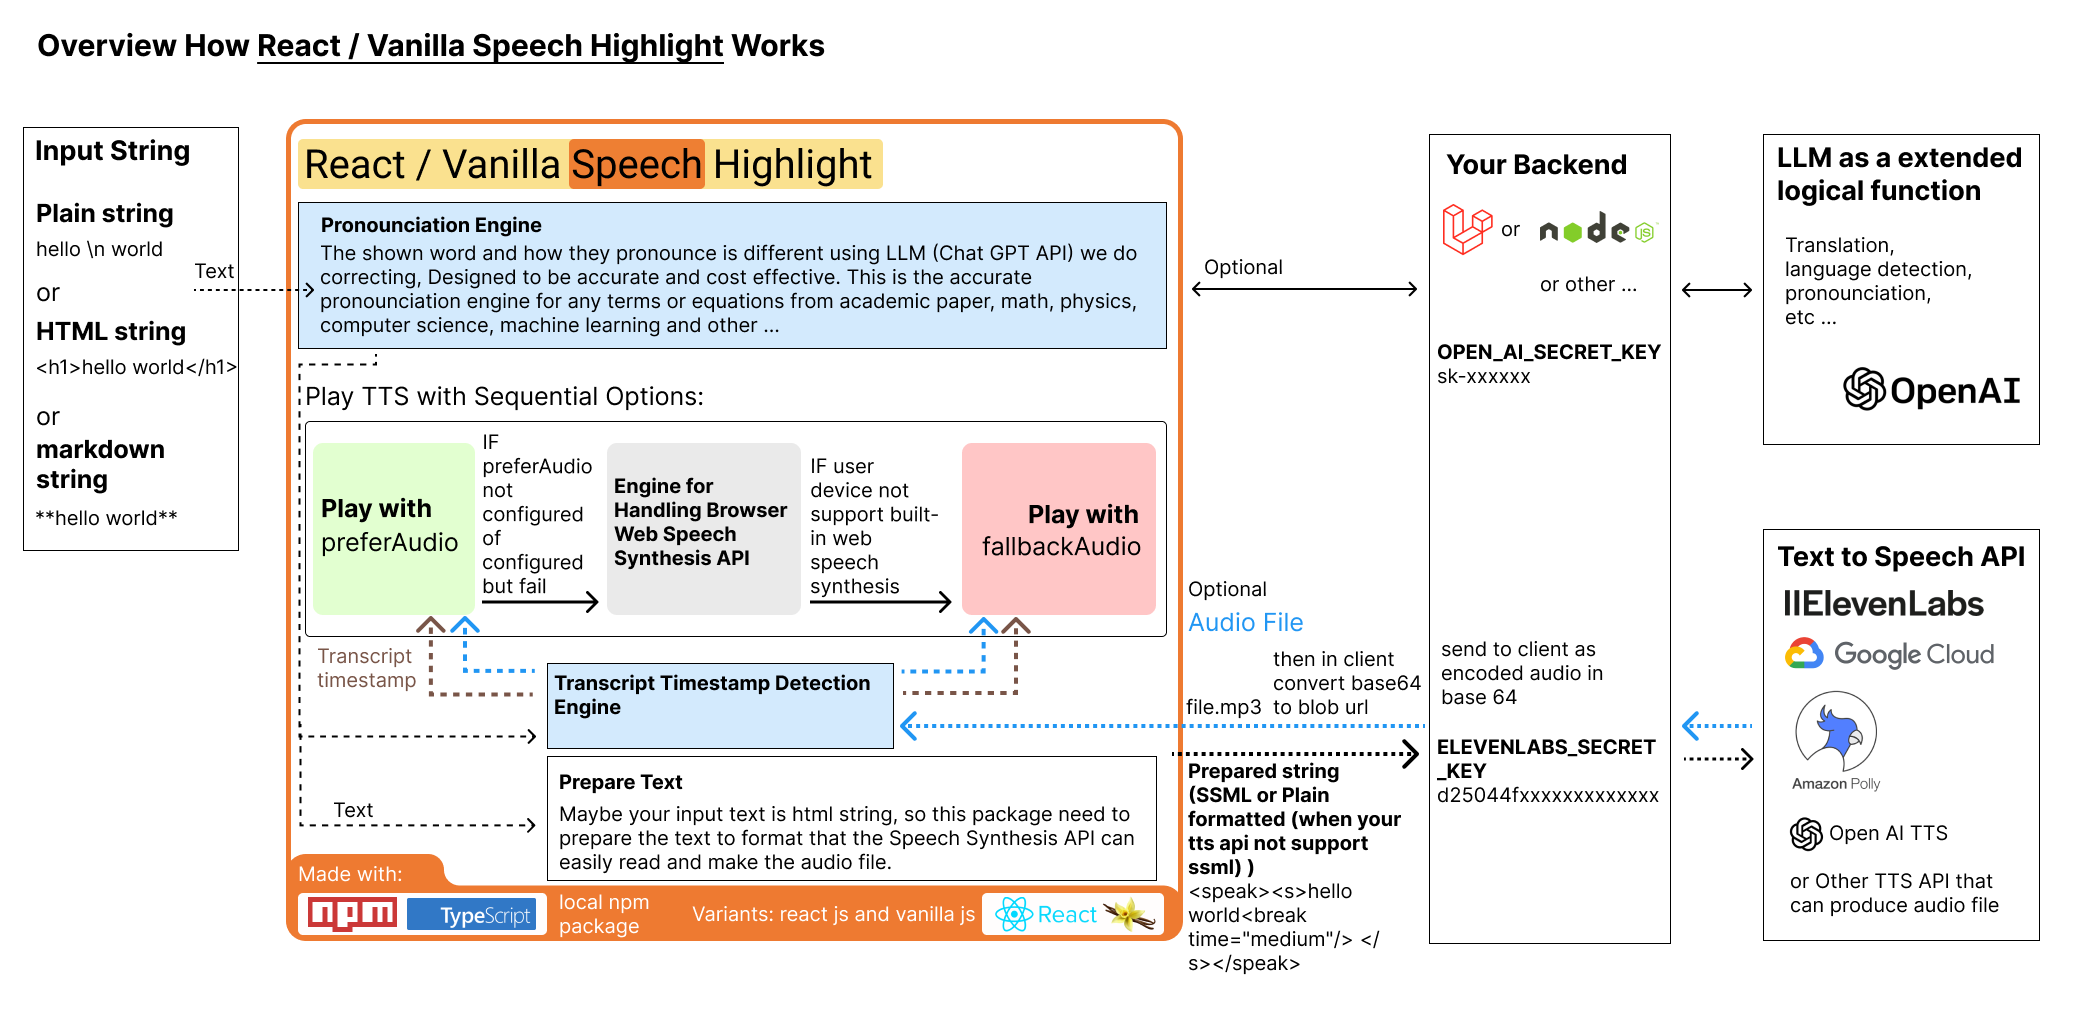 Overview how react speech highlight work